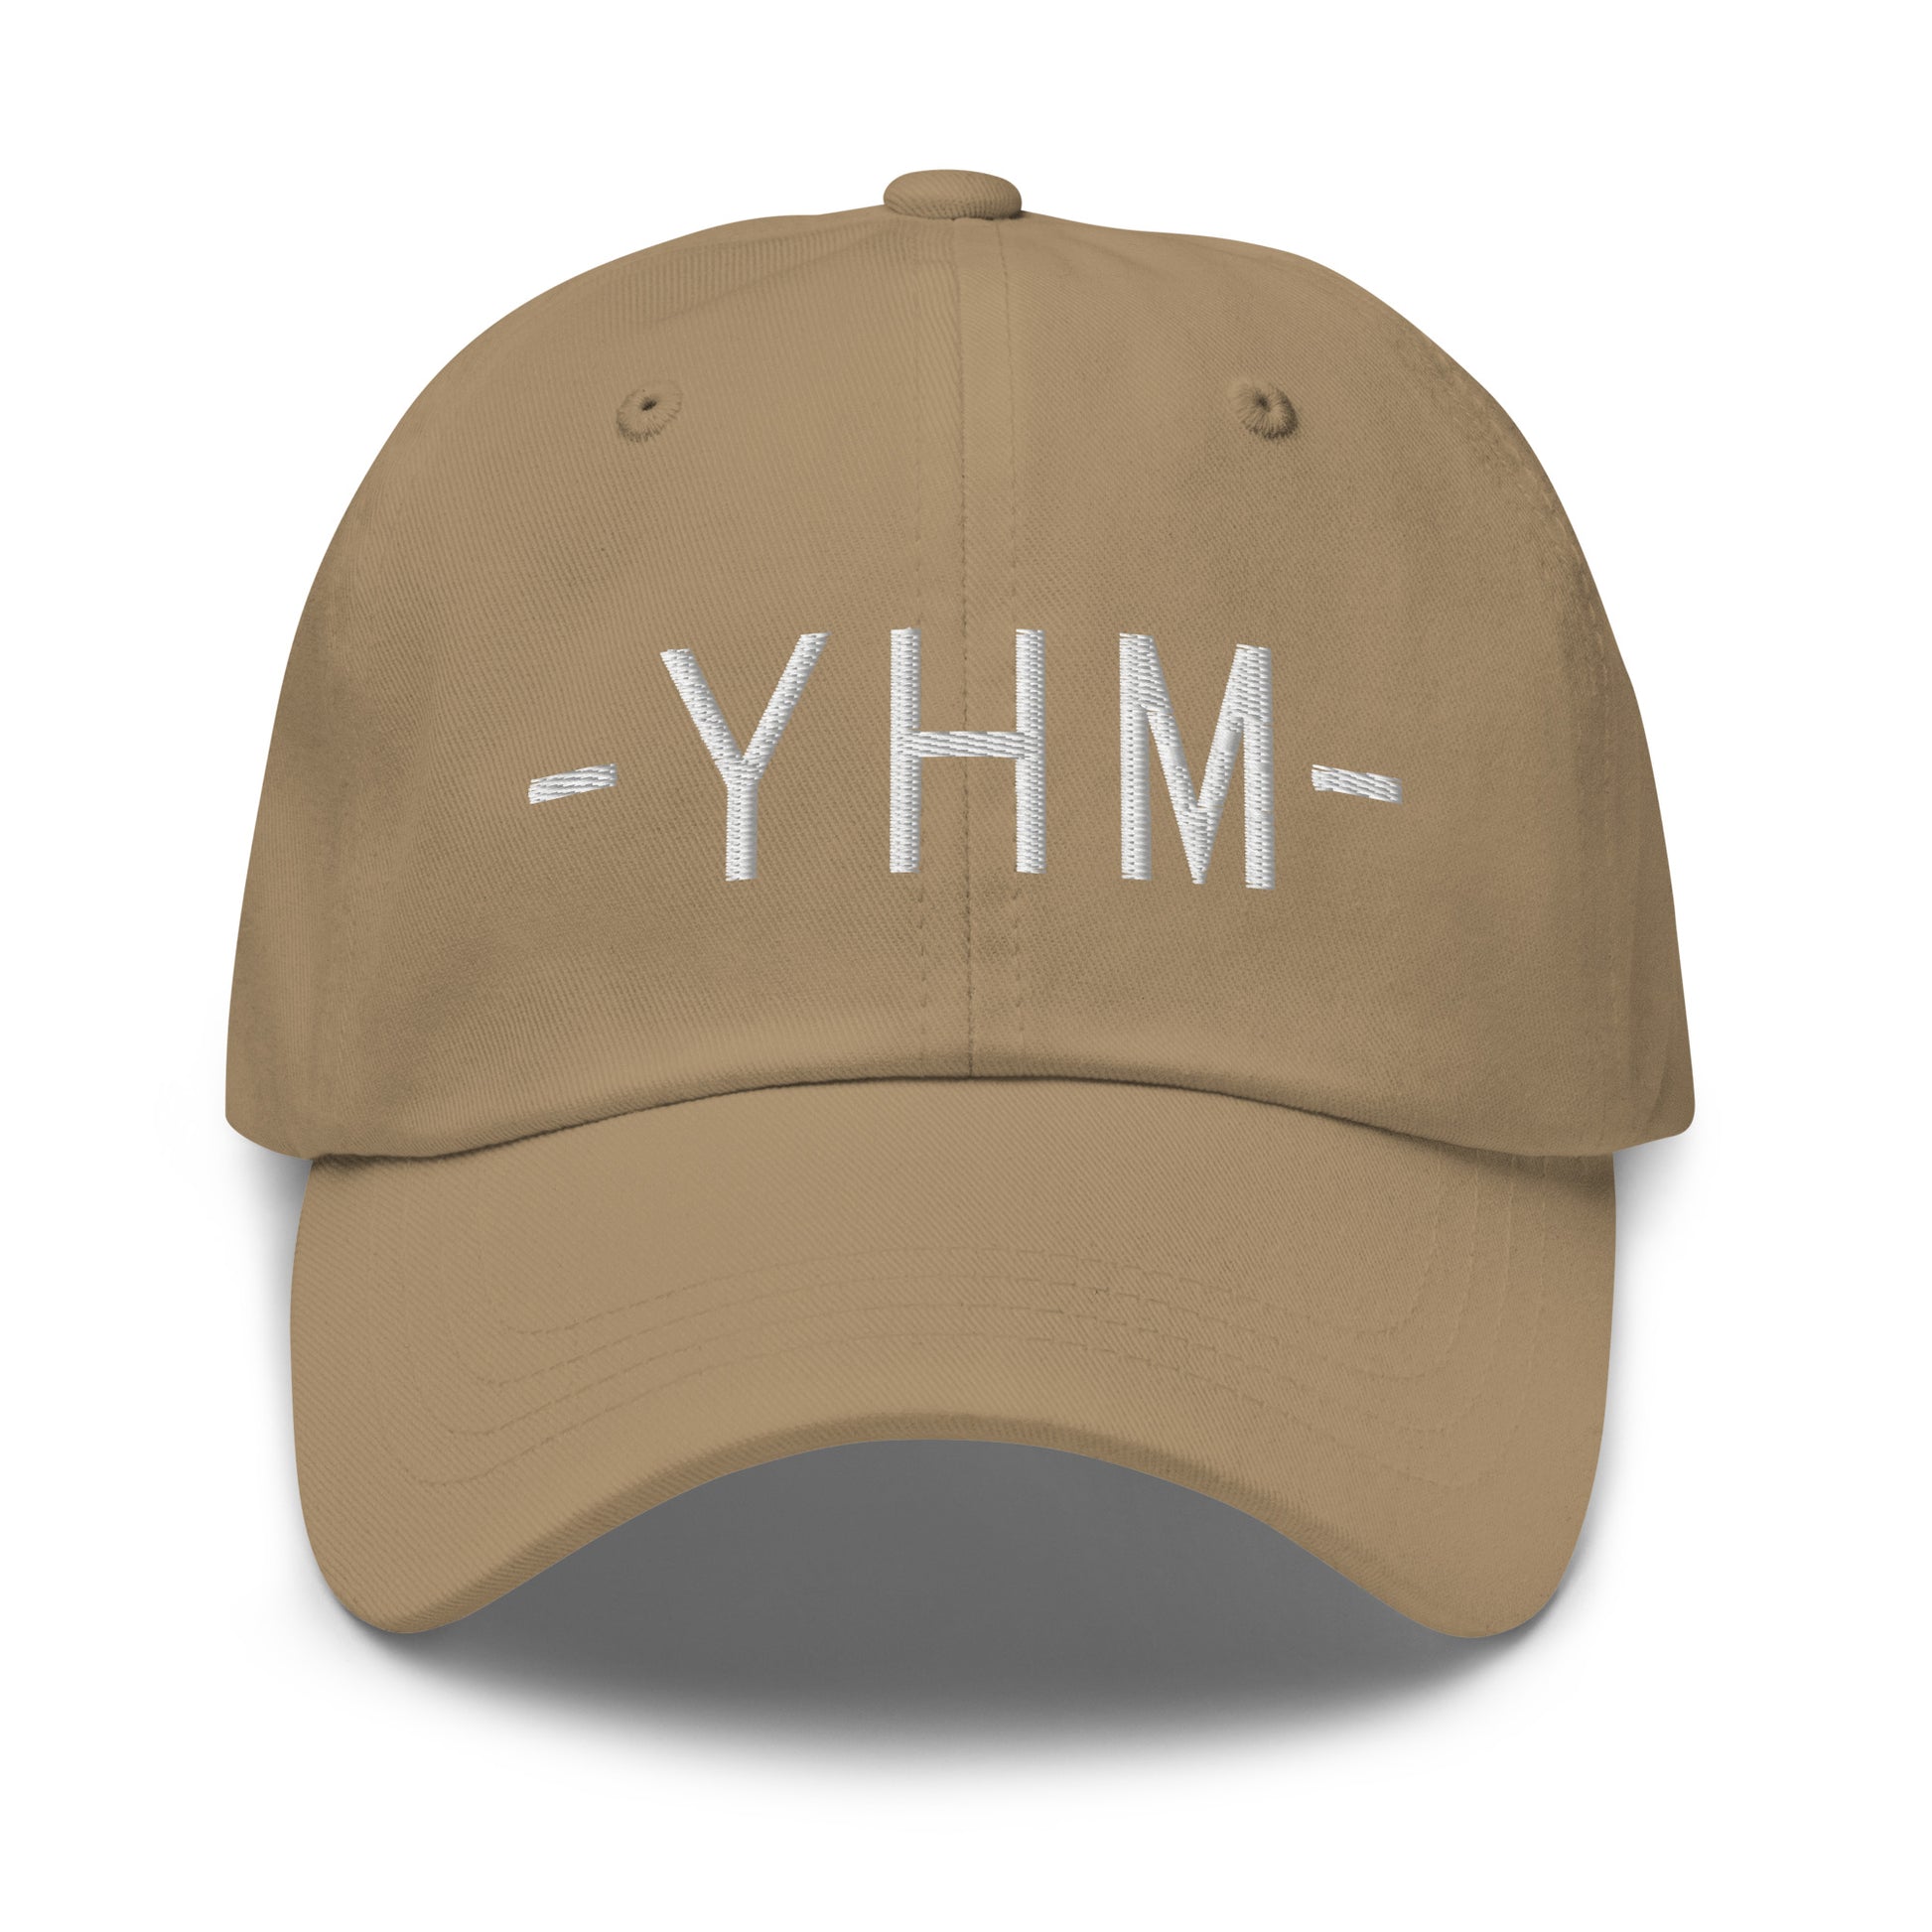 Souvenir Baseball Cap - White • YHM Hamilton • YHM Designs - Image 21